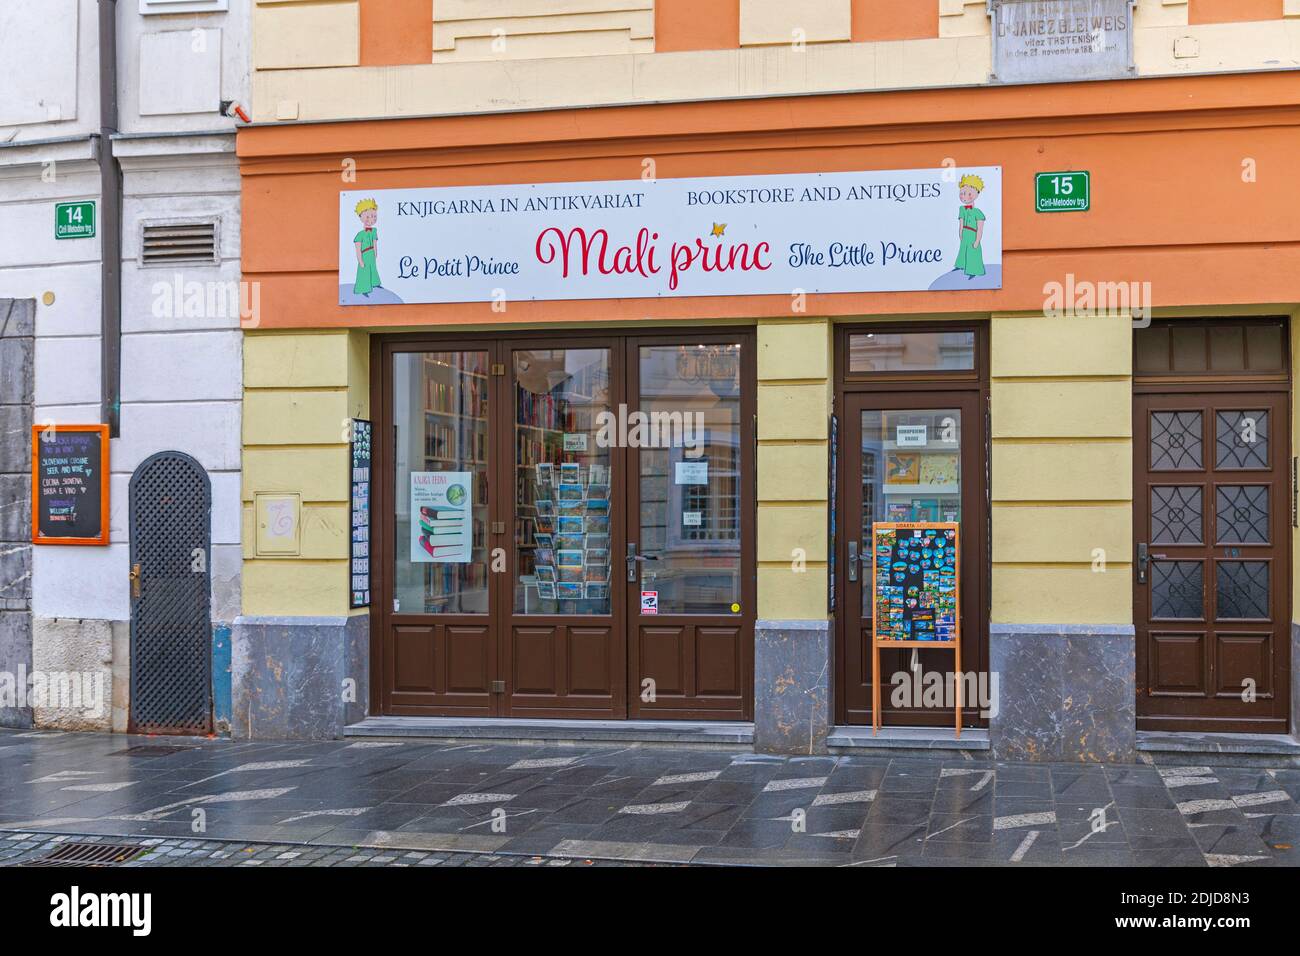 Ljubljana, Slowenien - 4. November 2019: Buchhandlung und Antiquitäten der kleine Prinz in Ljubljana, Slowenien. Stockfoto